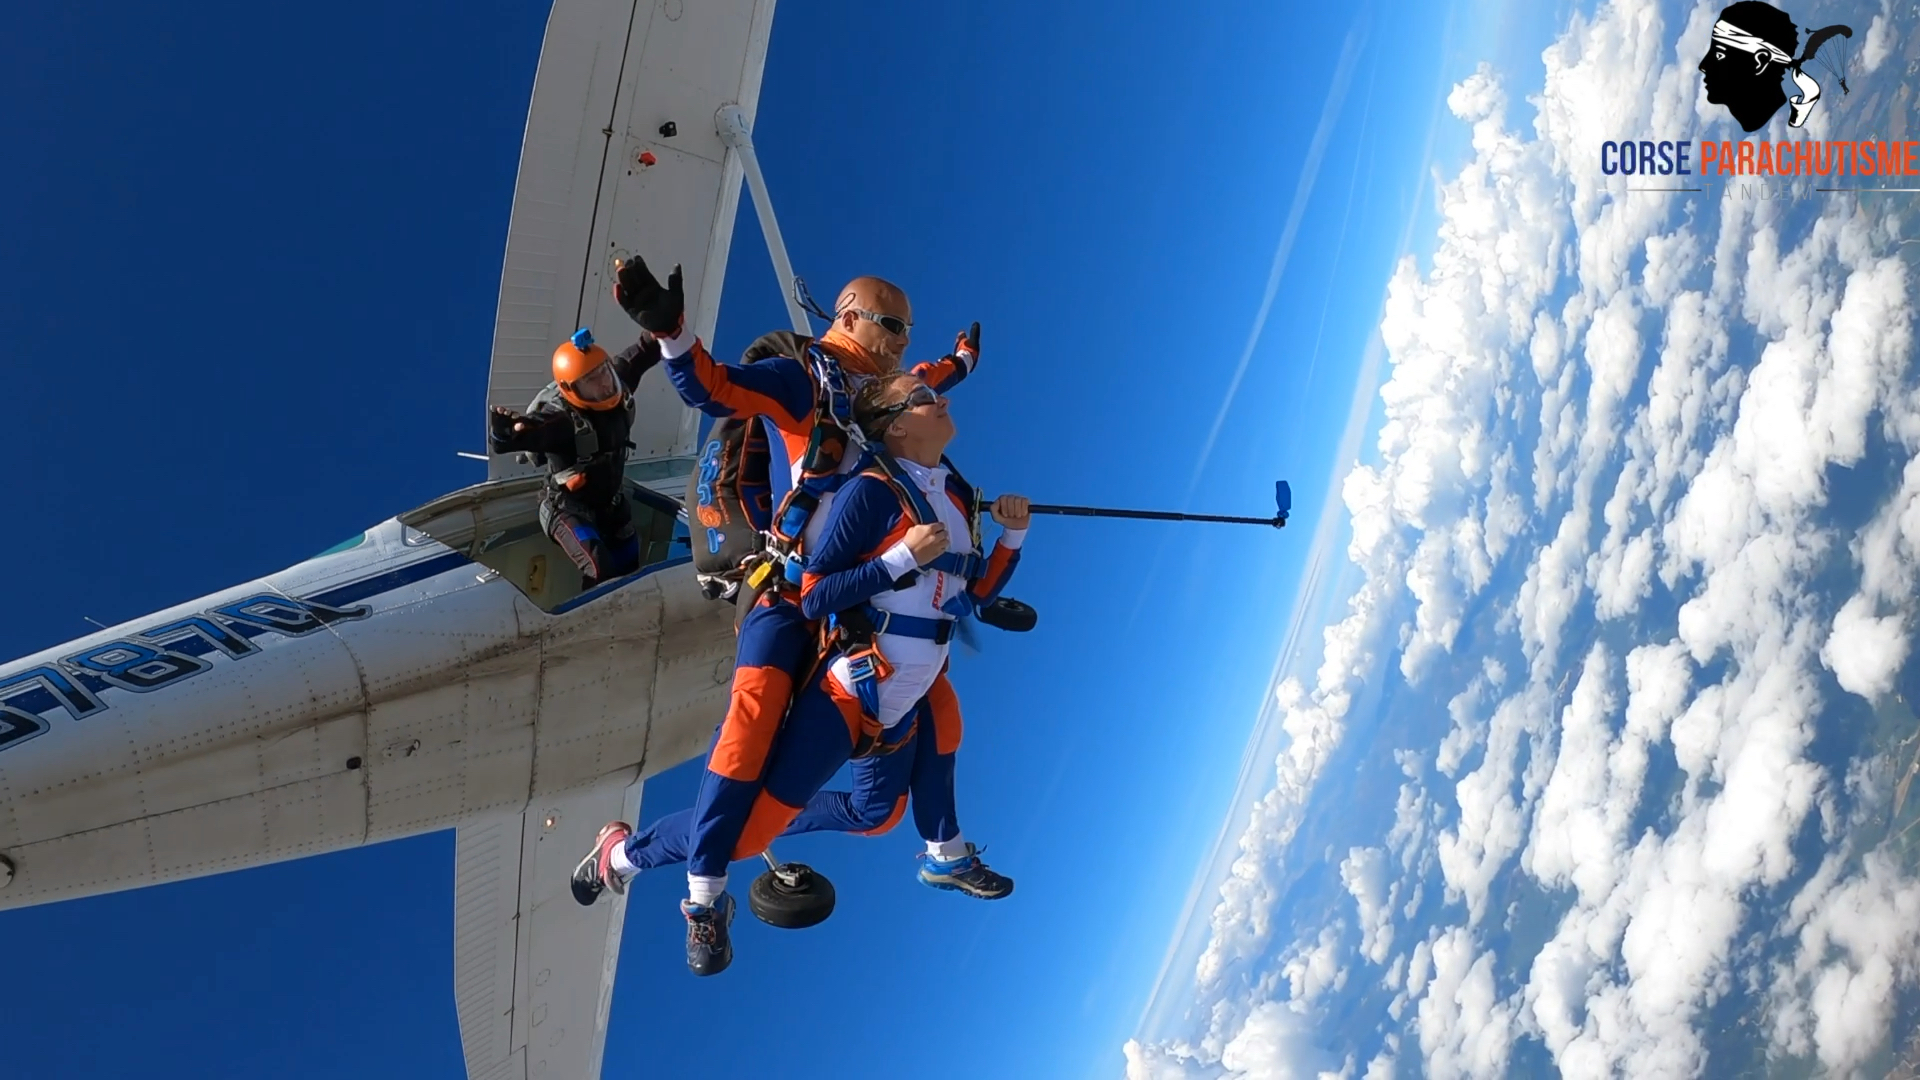 saut en parachute Corse3